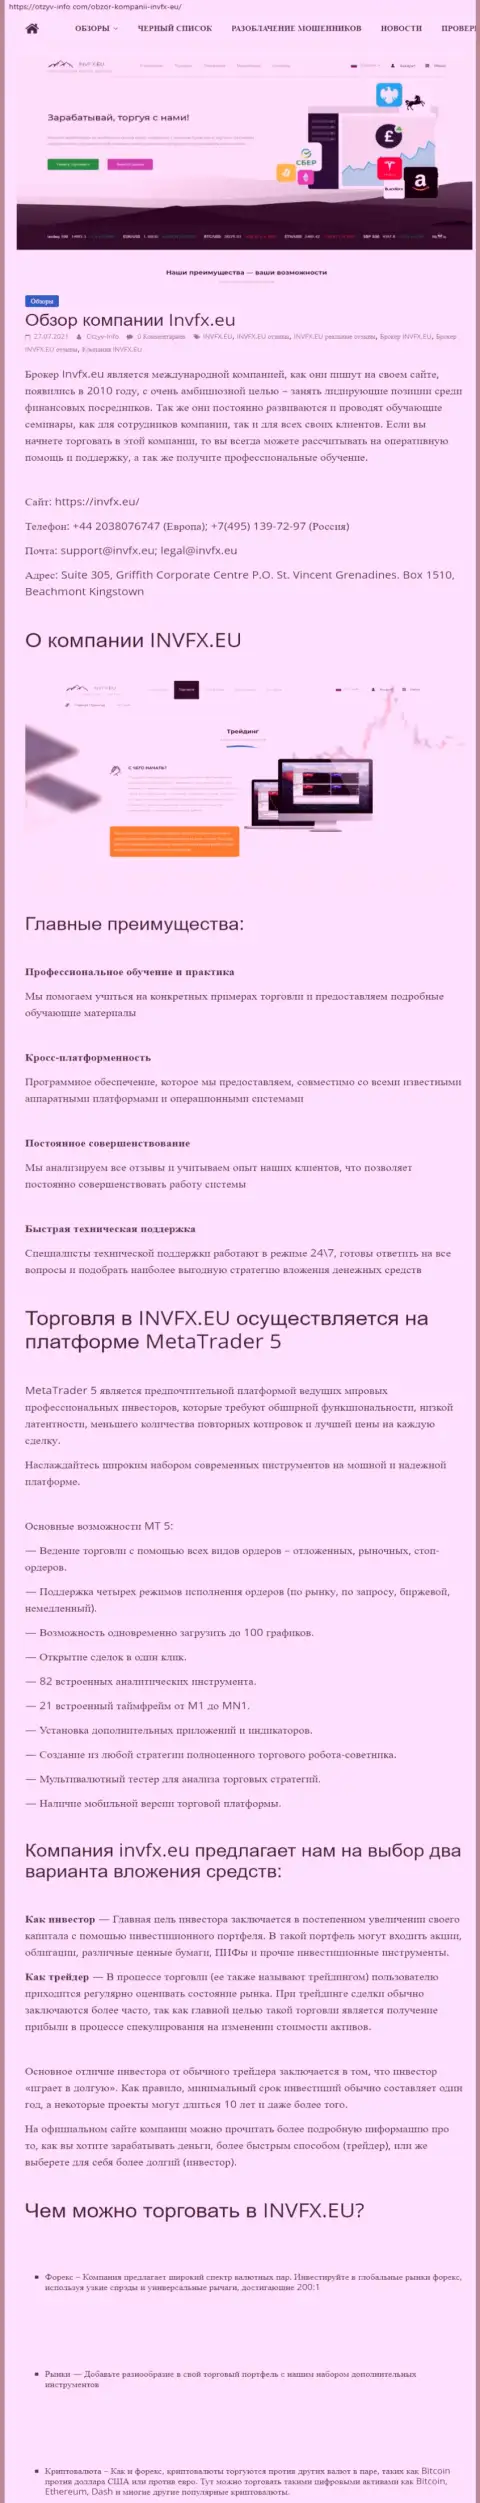 Информационный портал otzyv-info com опубликовал статью о forex-дилинговой организации Invesco Limited